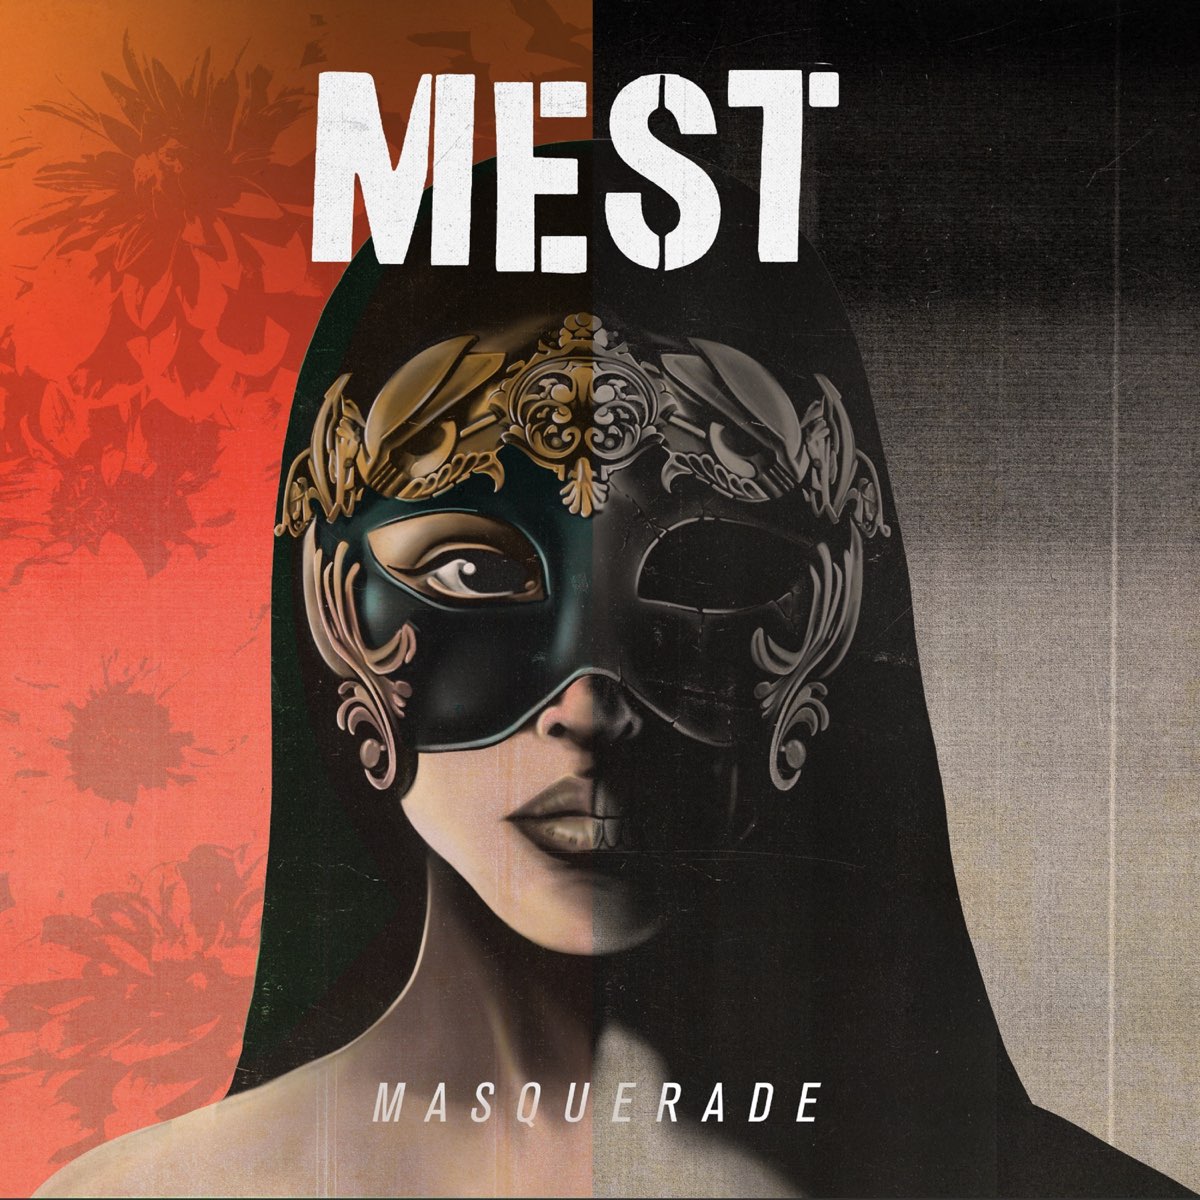 Masquerade - Album by Mest - Apple Music